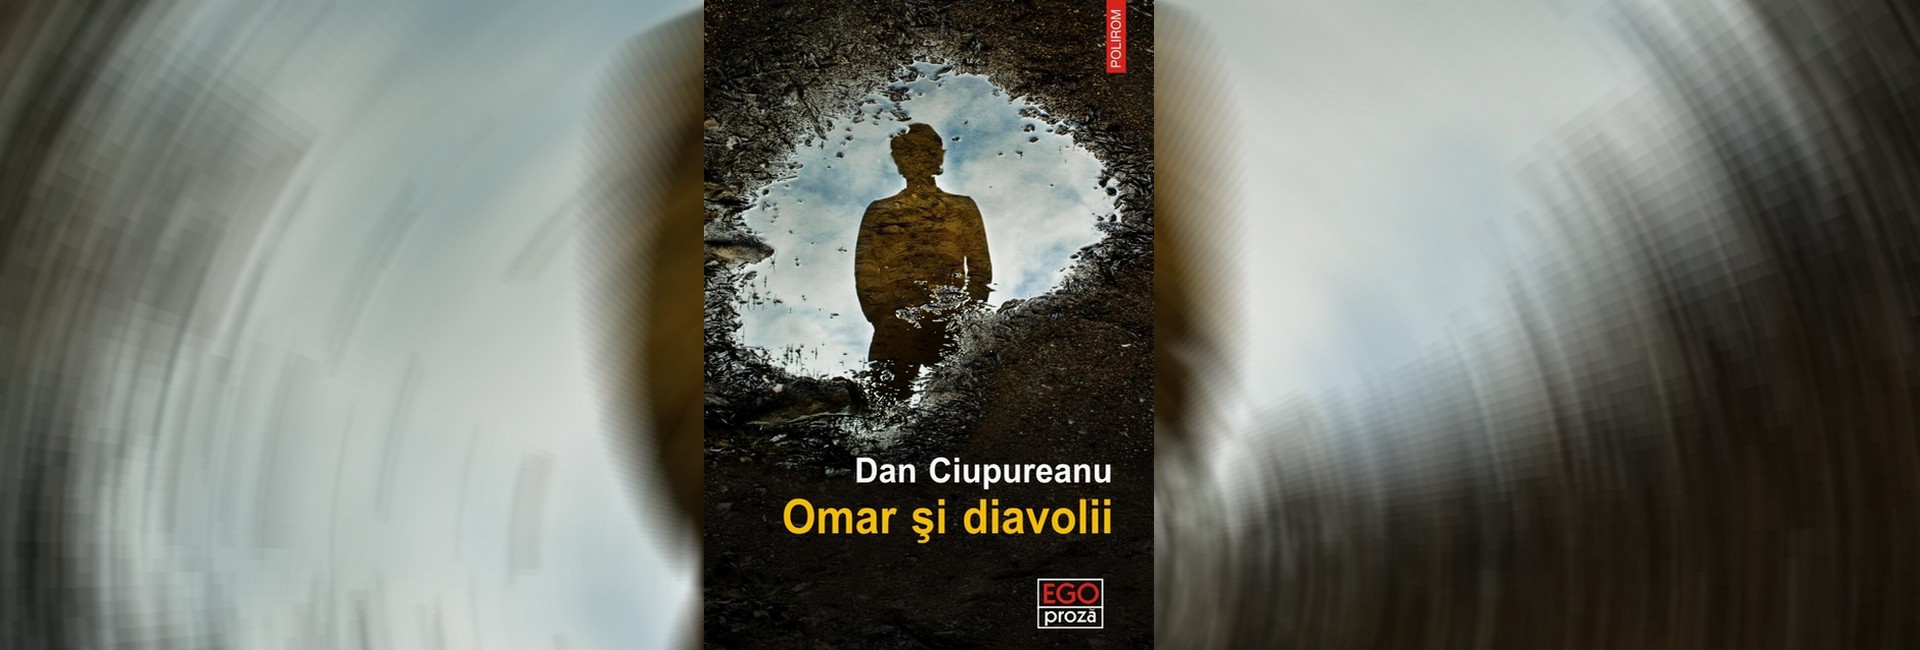 recenzie carte autori români Omar şi diavolii Dan Ciupureanu slider